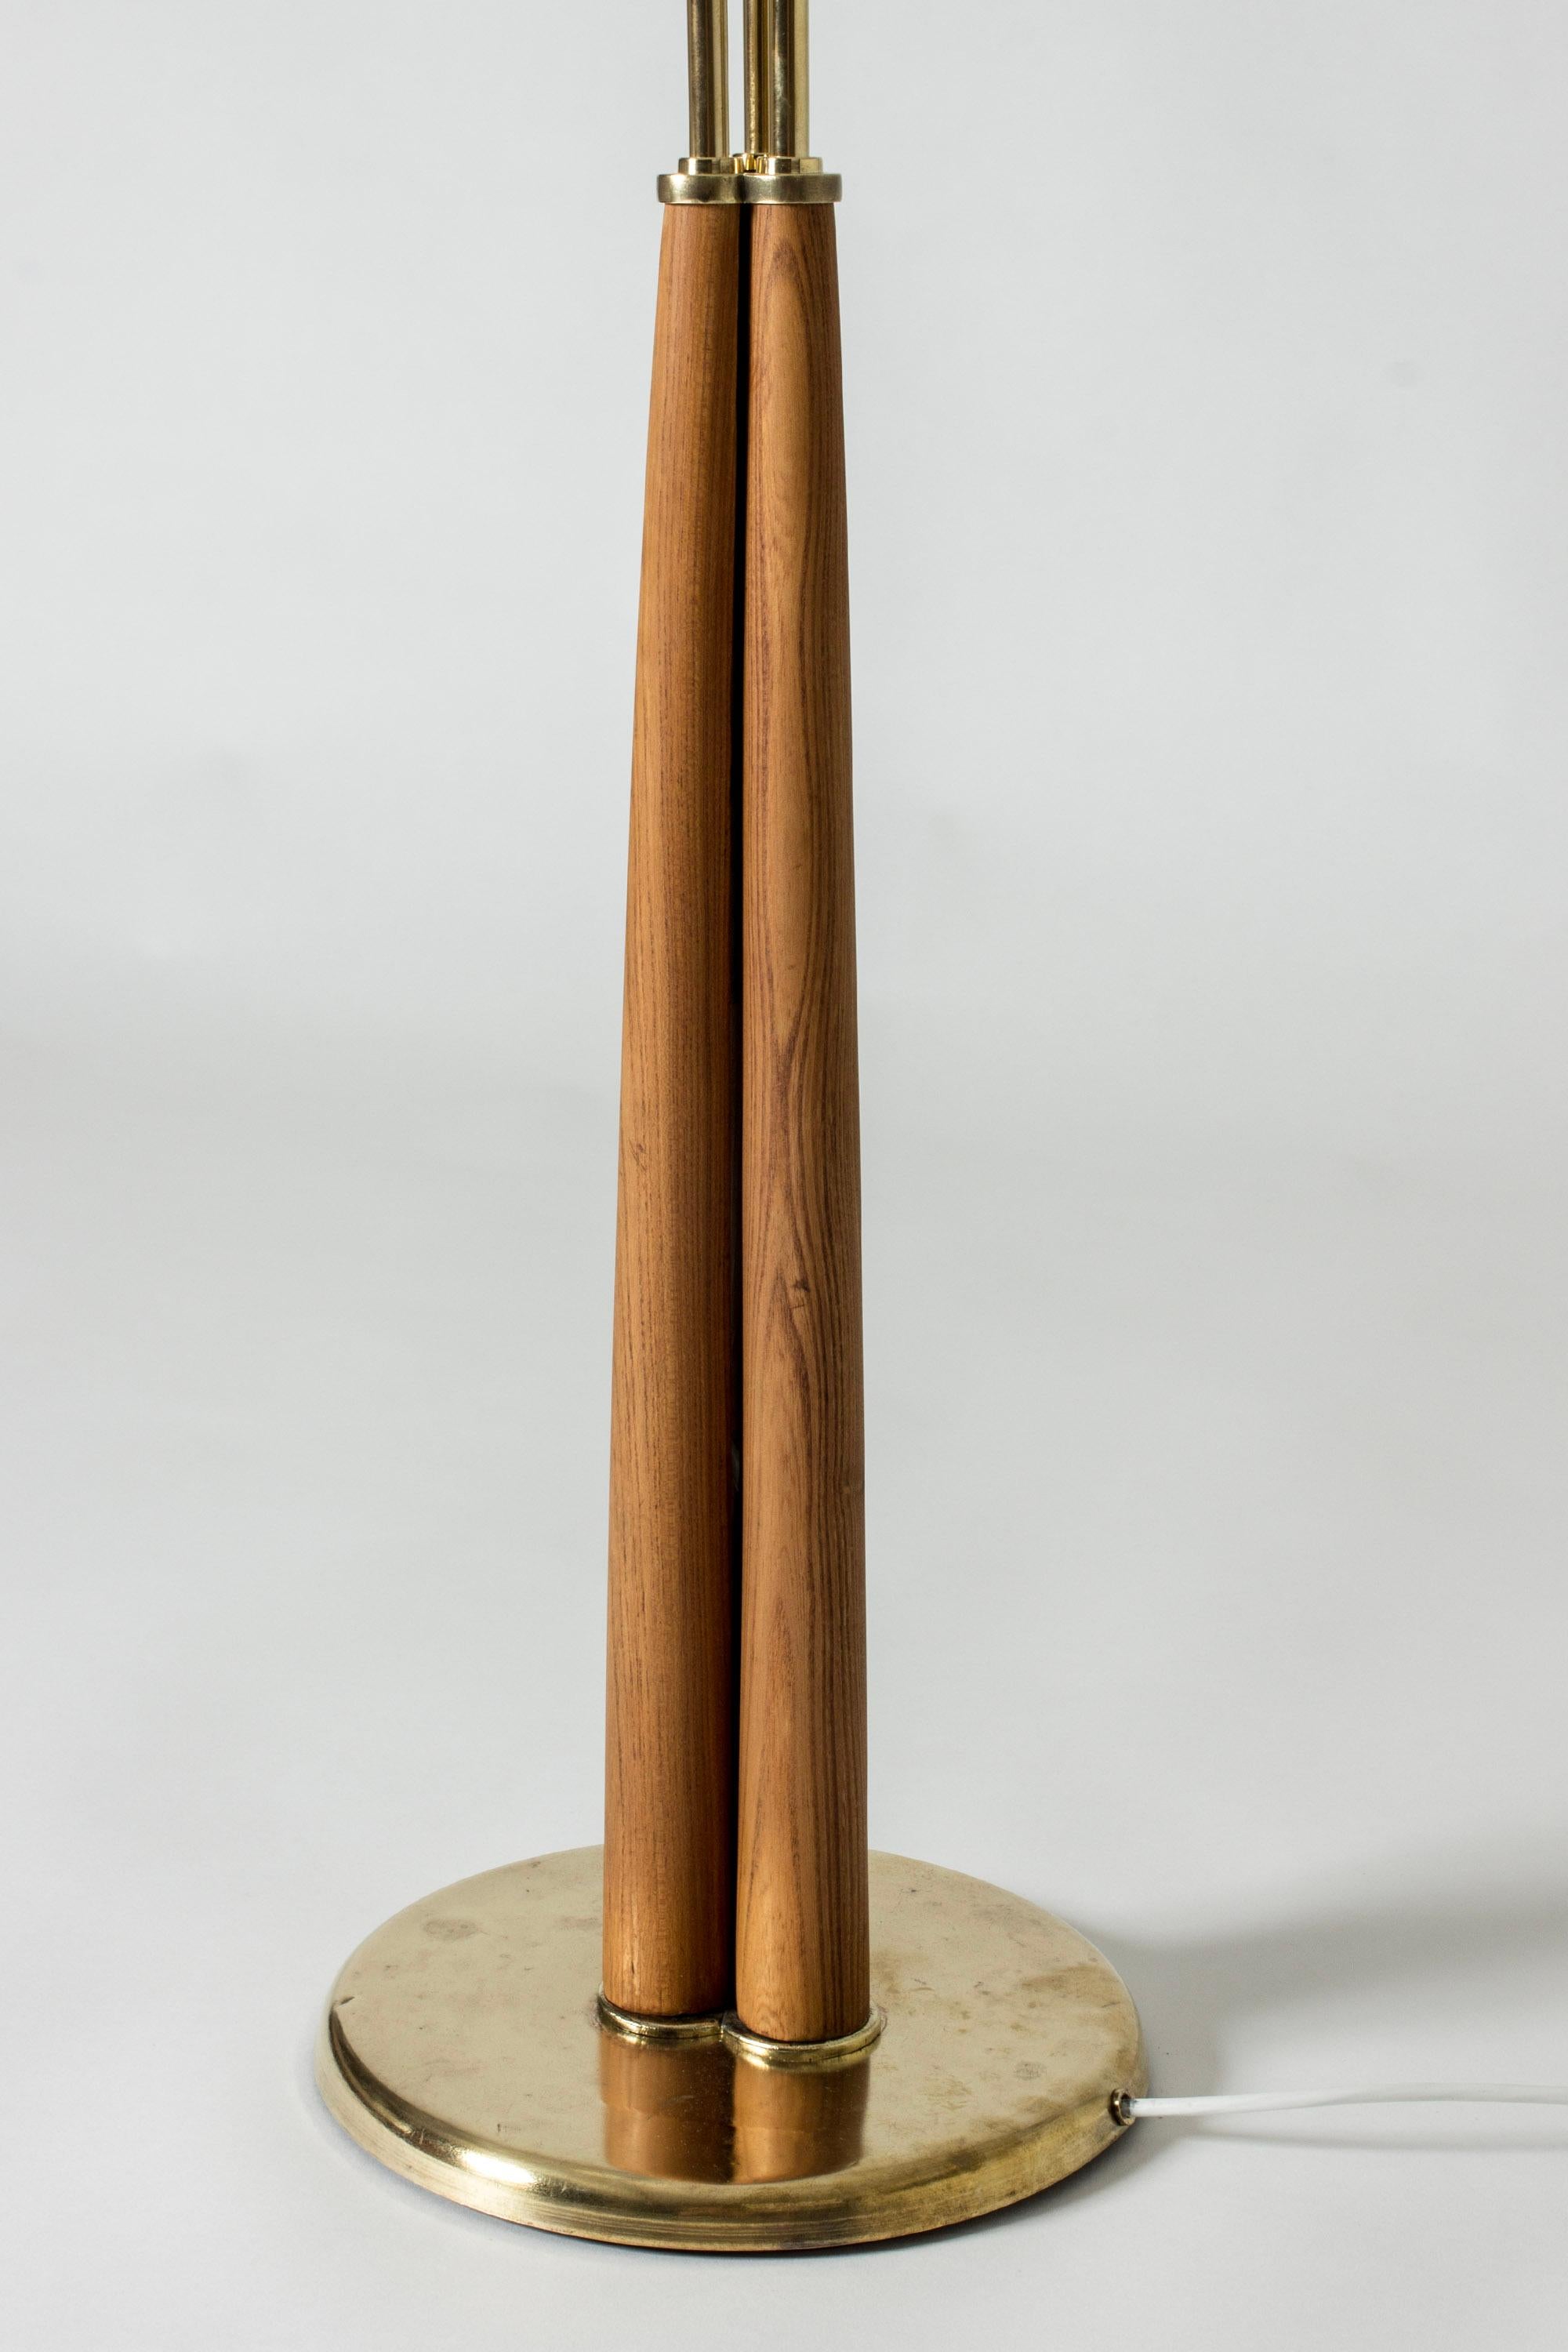 Scandinavian Midcentury Brass Floor Lamp, Sweden, 1940s For Sale 2